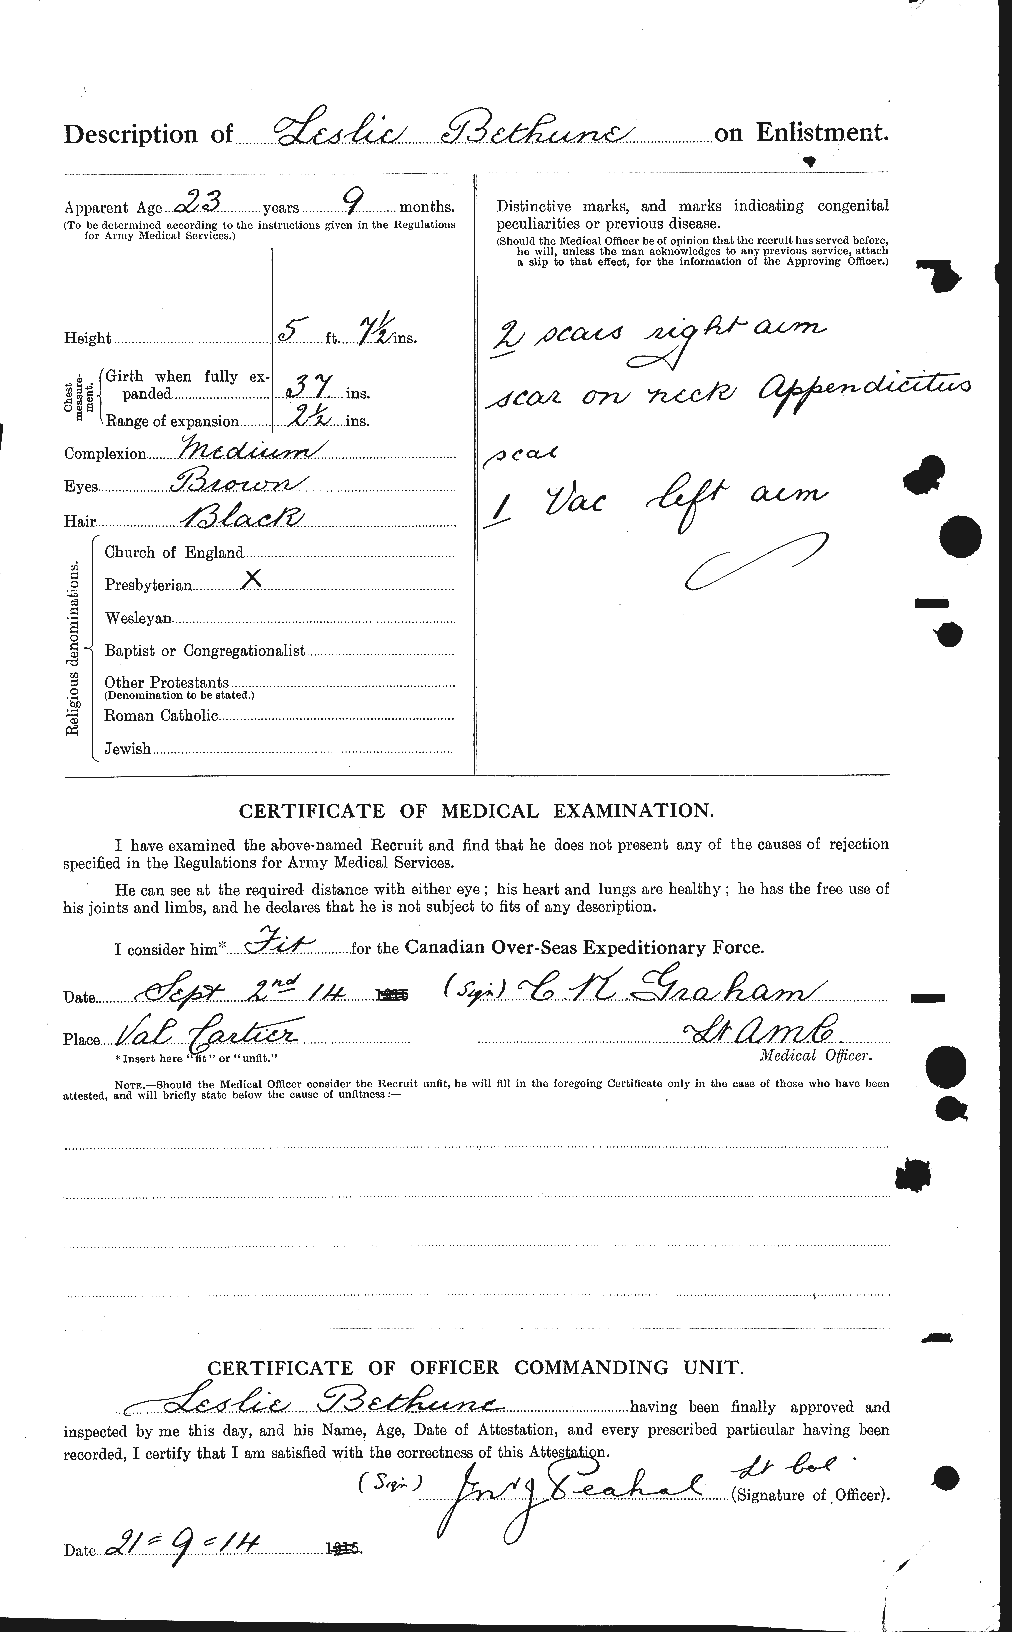 Dossiers du Personnel de la Première Guerre mondiale - CEC 237031b